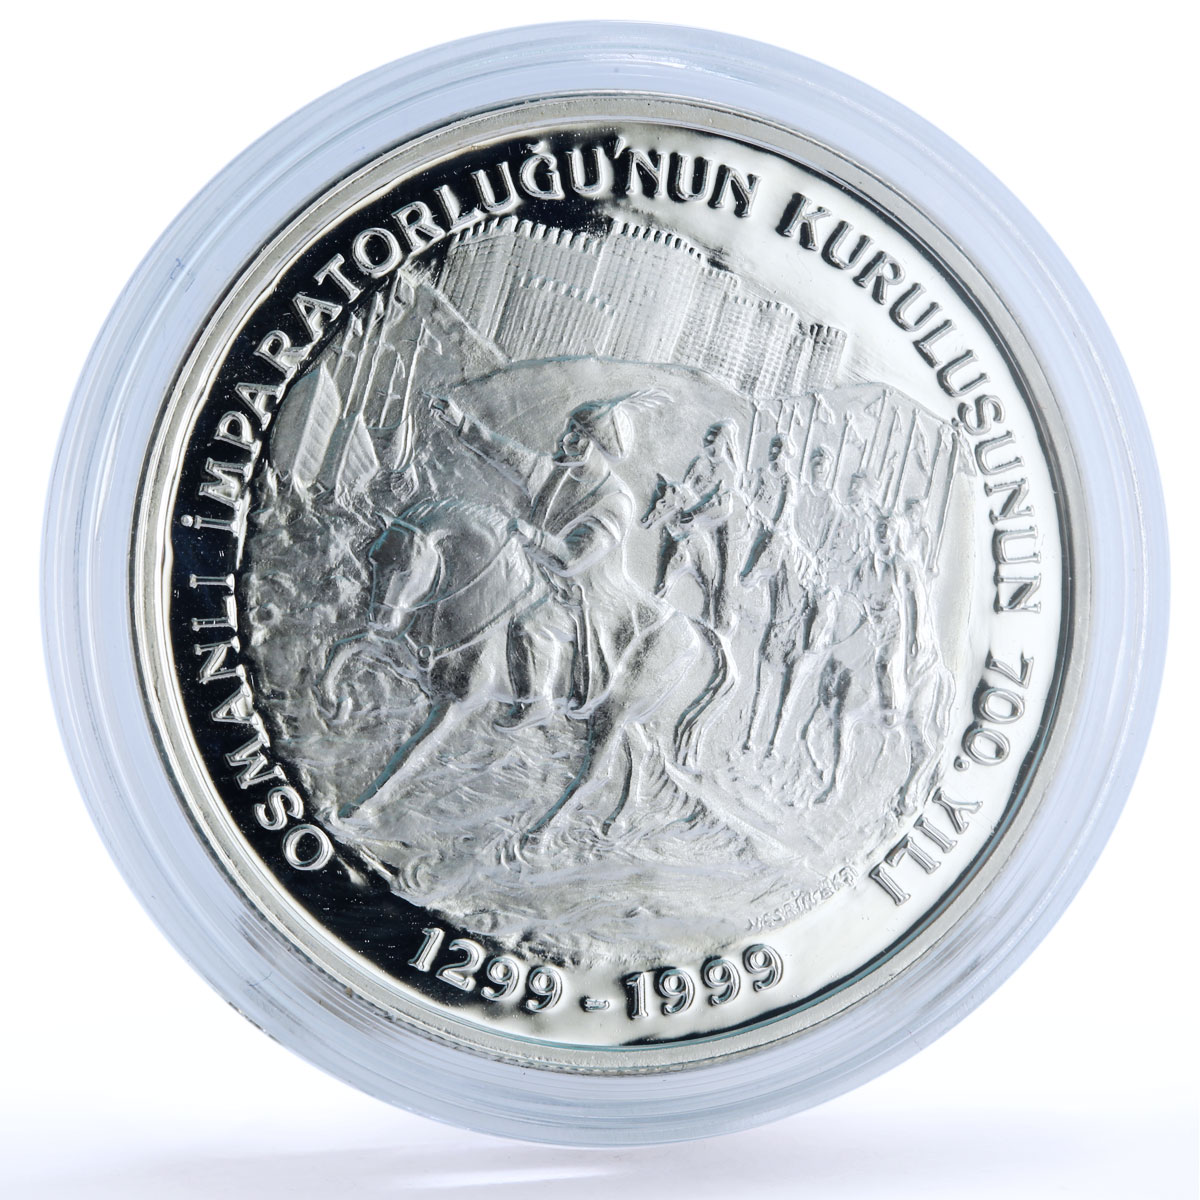 Turkey 4000000 lira 700th Anniversary Ottoman Empire Horsemans silver coin 1999